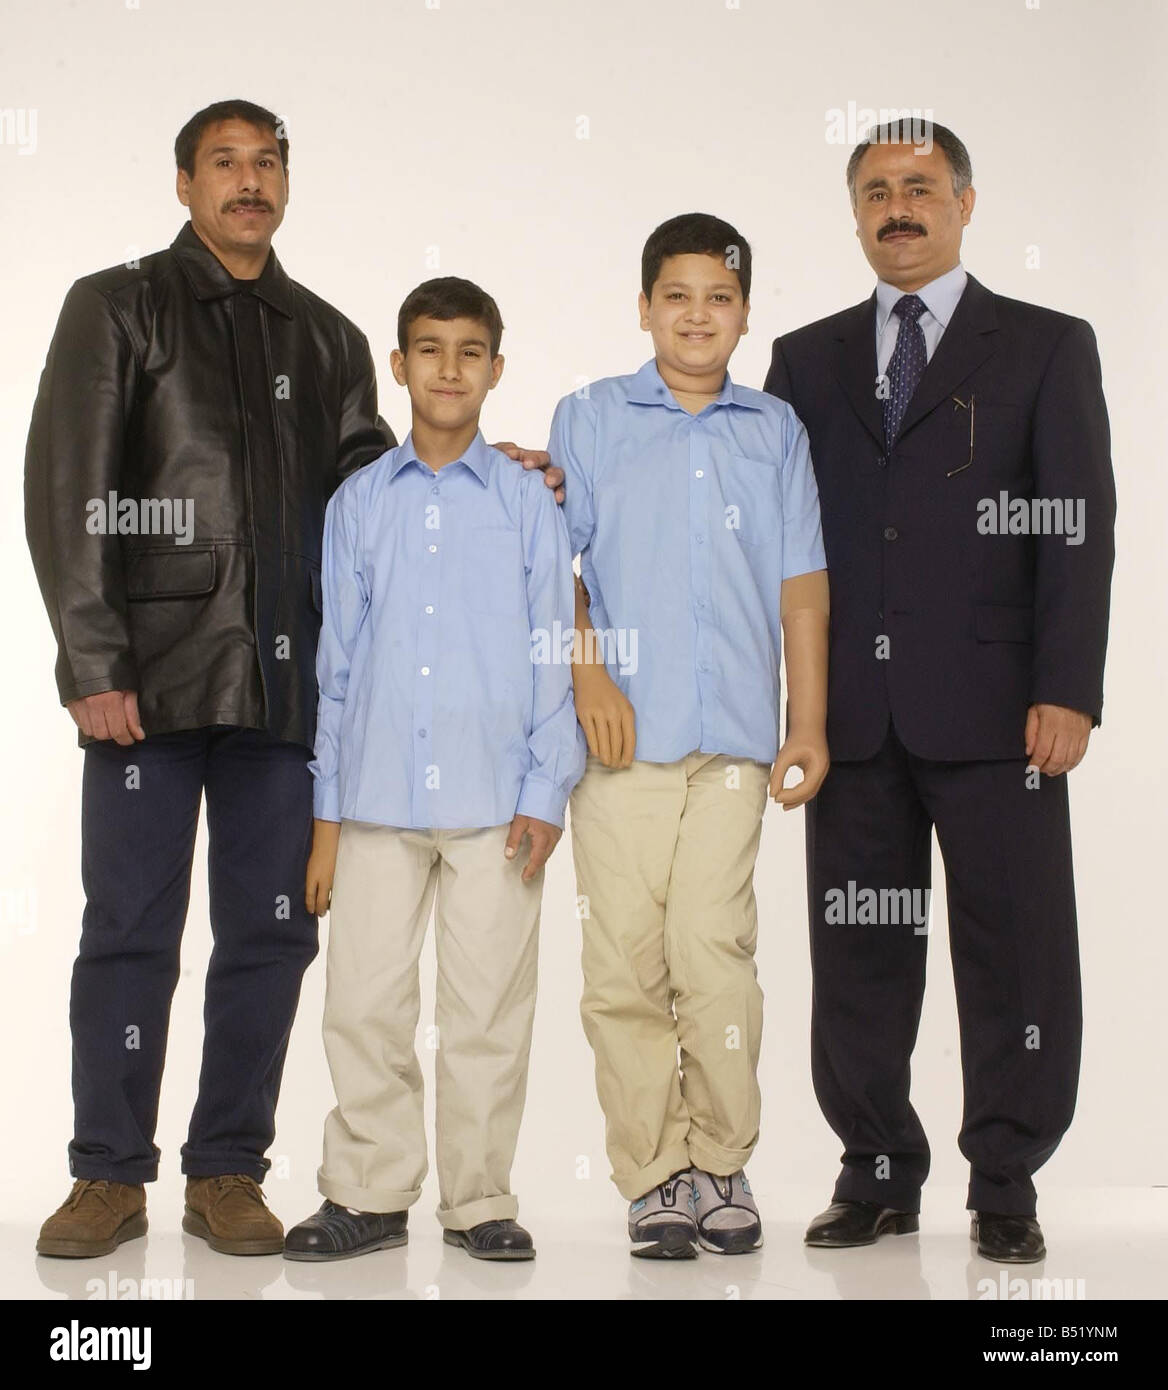 Ali Abbas, die beide Arme verloren und schreckliche Verbrennungen erlitten während der Bombardierung von Bagdad im Irak-Krieg posiert für Studio Bilder mit seinem Onkel Mohamed Ahmed und sein Onkel Mohamed nach seiner Operationen Oktober 2003 Stockfoto